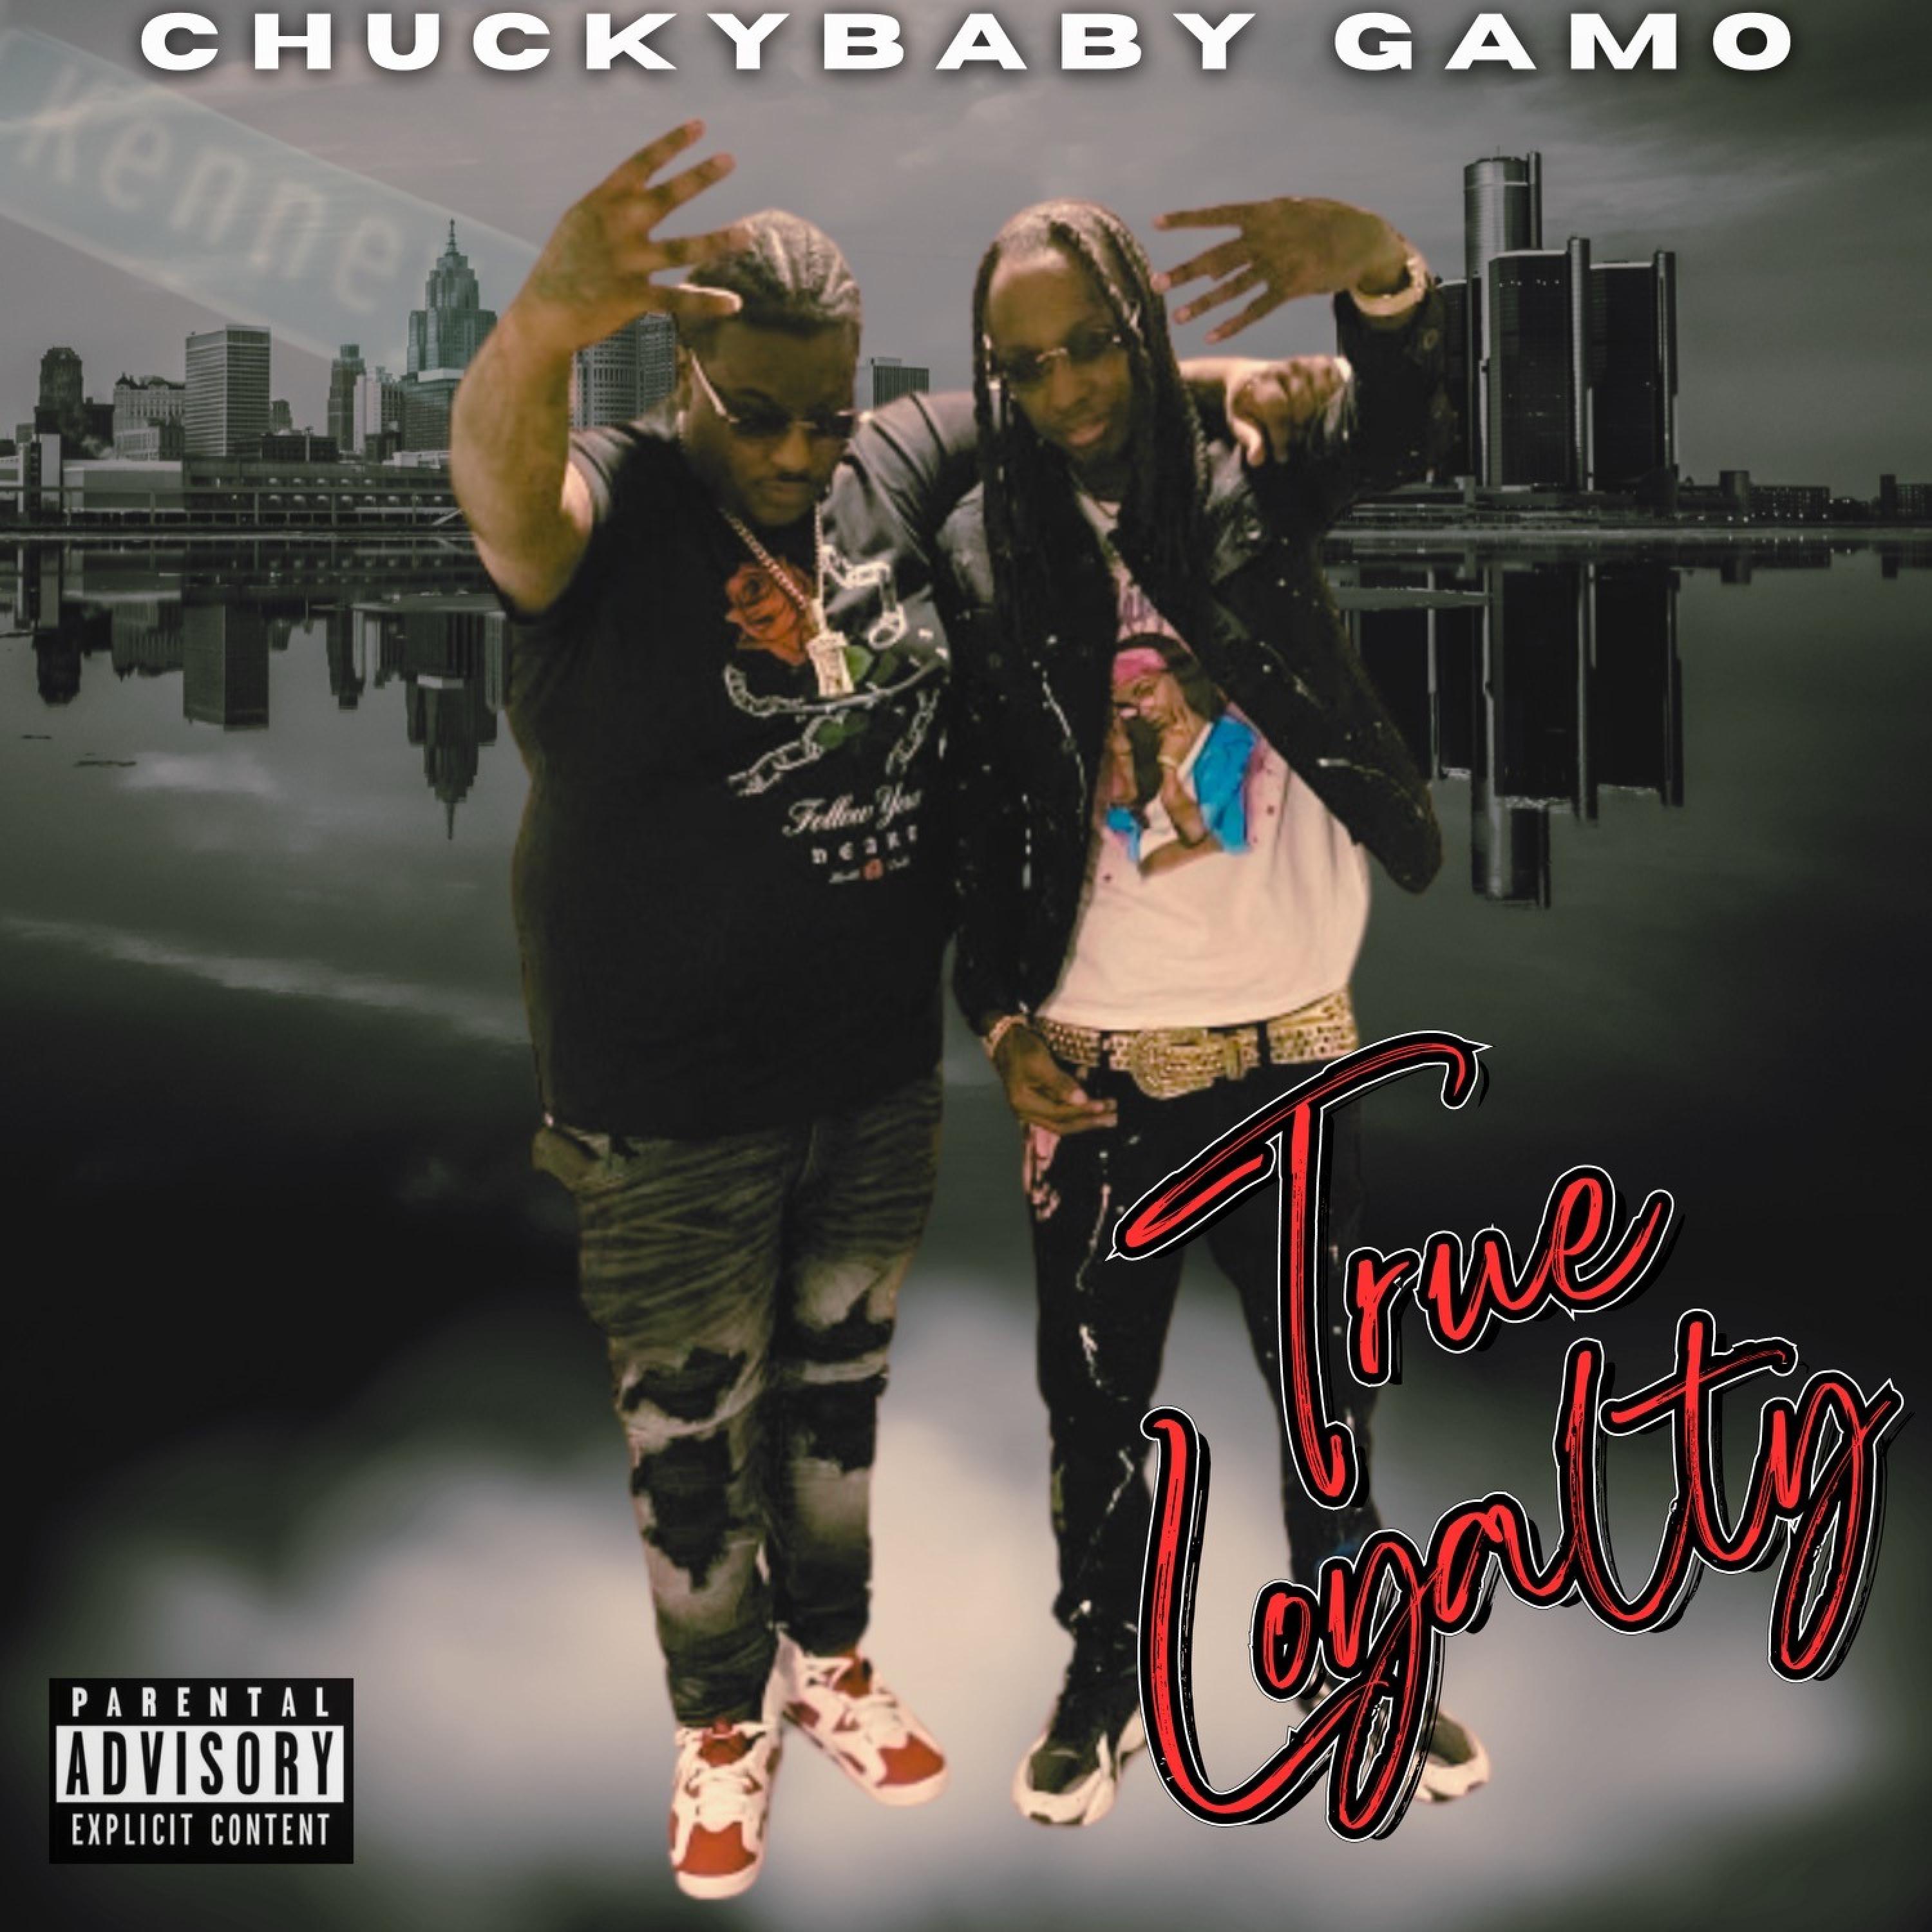 Chuckybaby Gamo - True loyalty